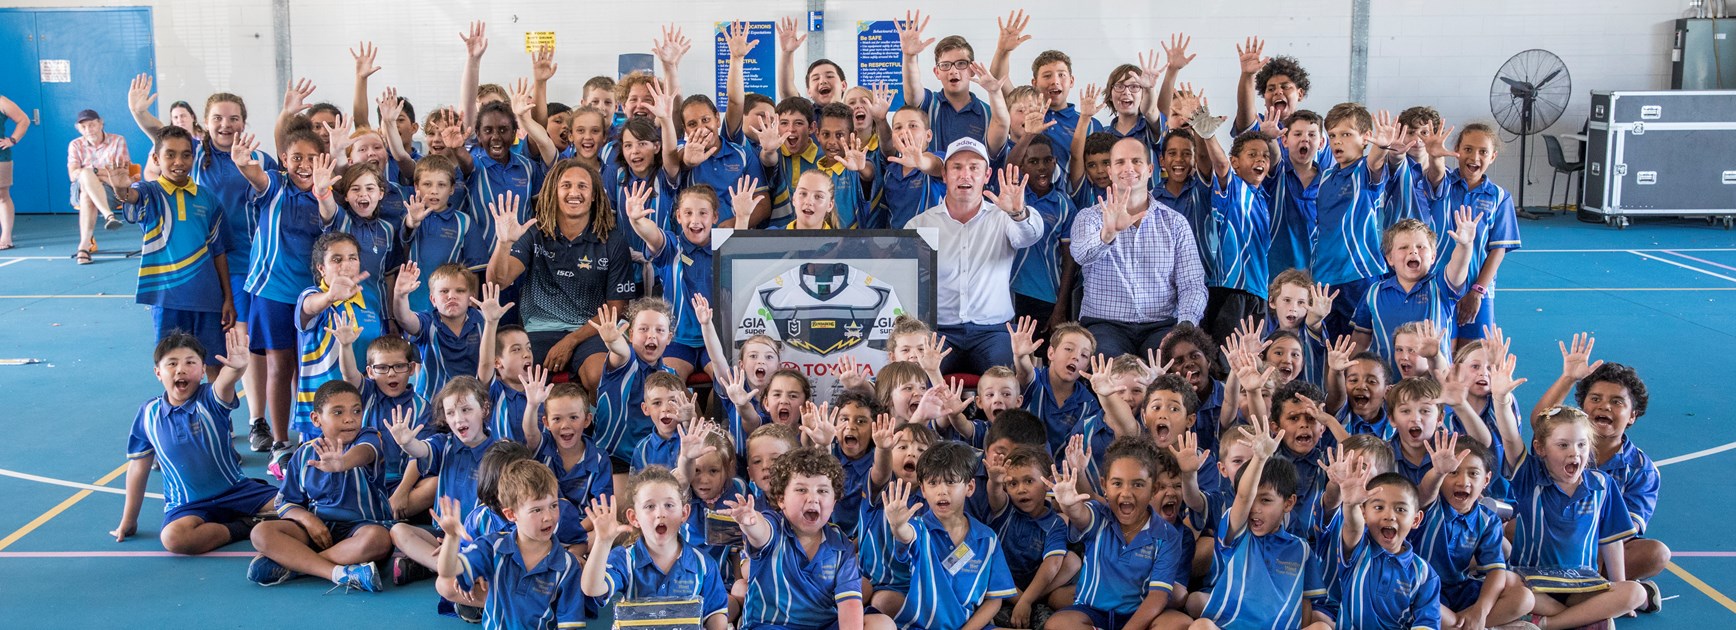 Townsville West wins school challenge